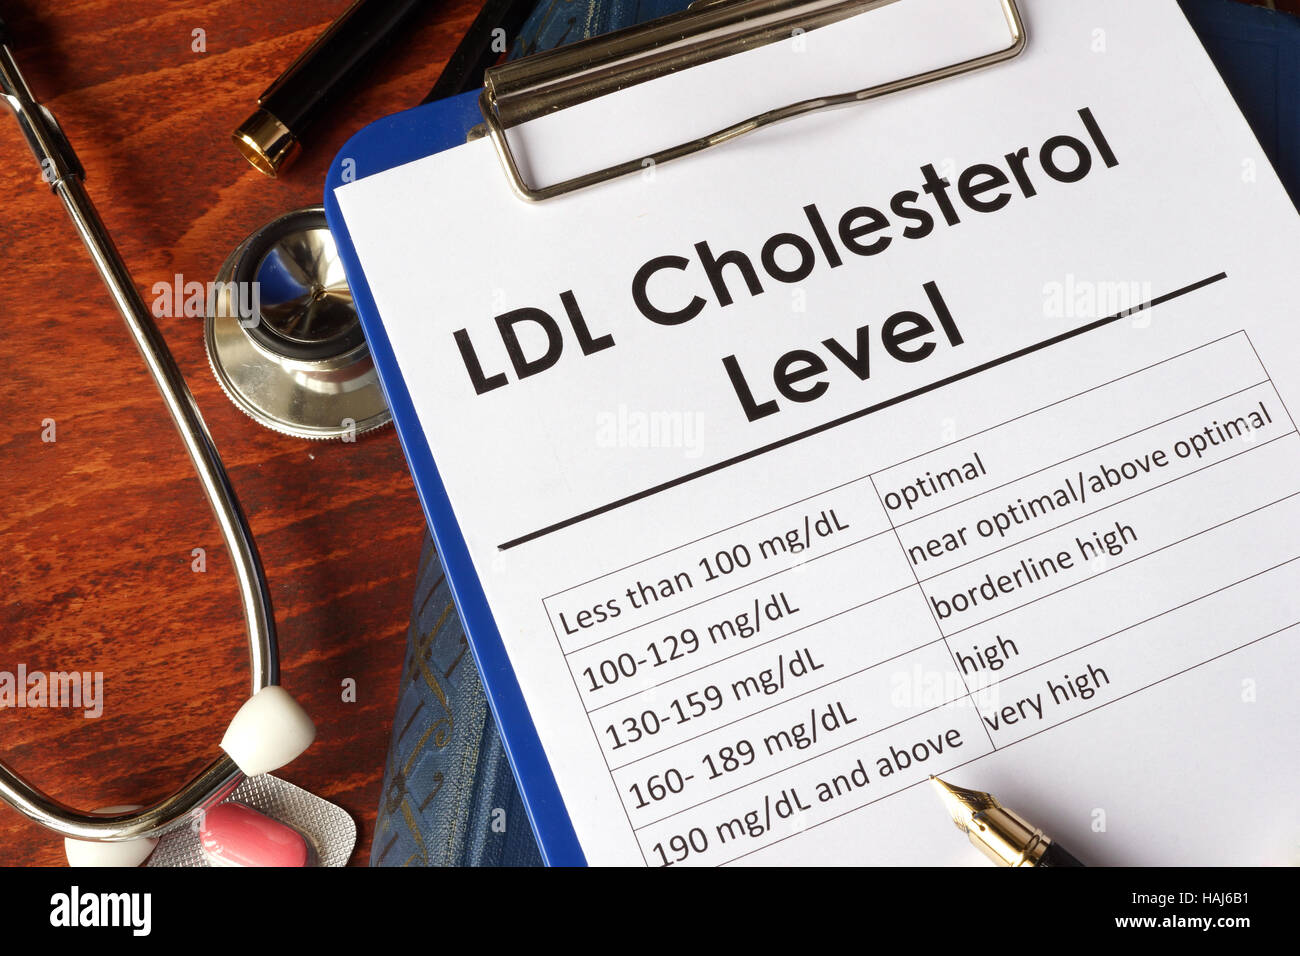 LDL (Bad) livello di colesterolo grafico su un tavolo. Foto Stock